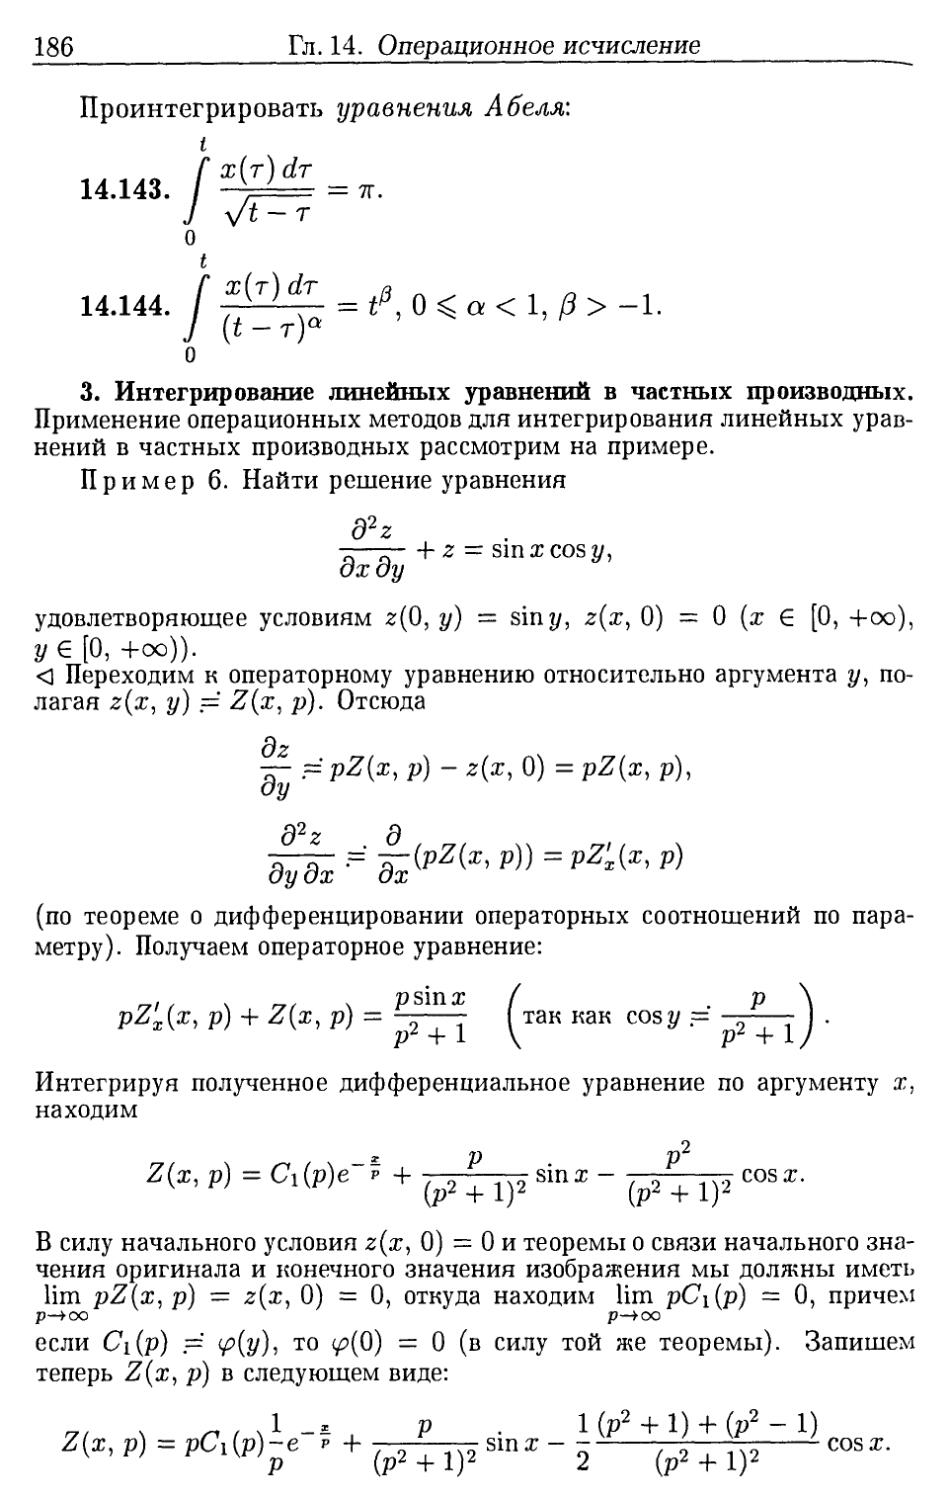 3. Интегрирование линейных уравнений в частных производных